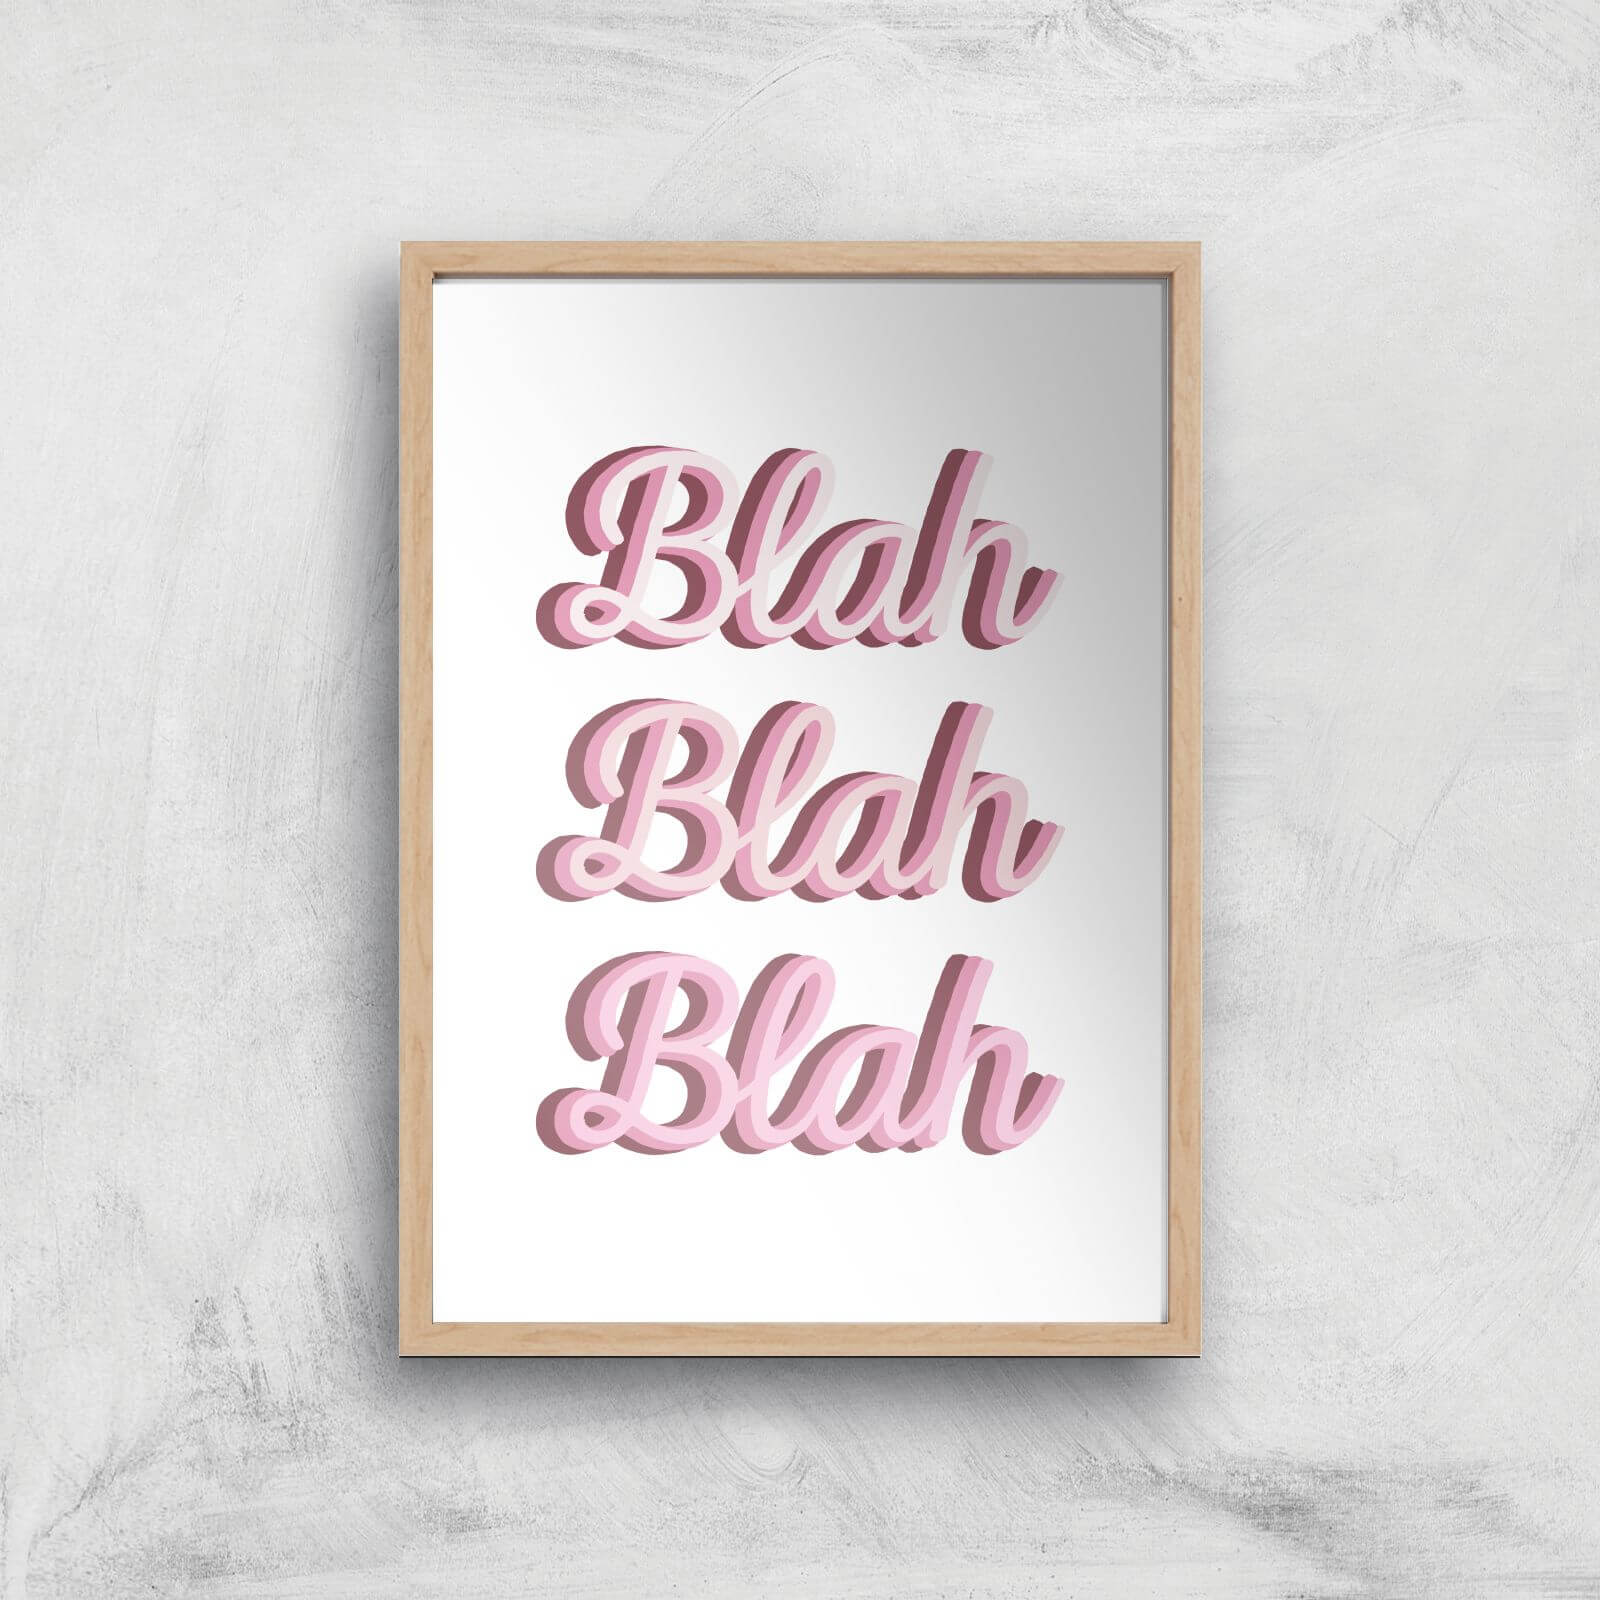 Blah Blah Blah Giclée Art Print - A3 - Wooden Frame